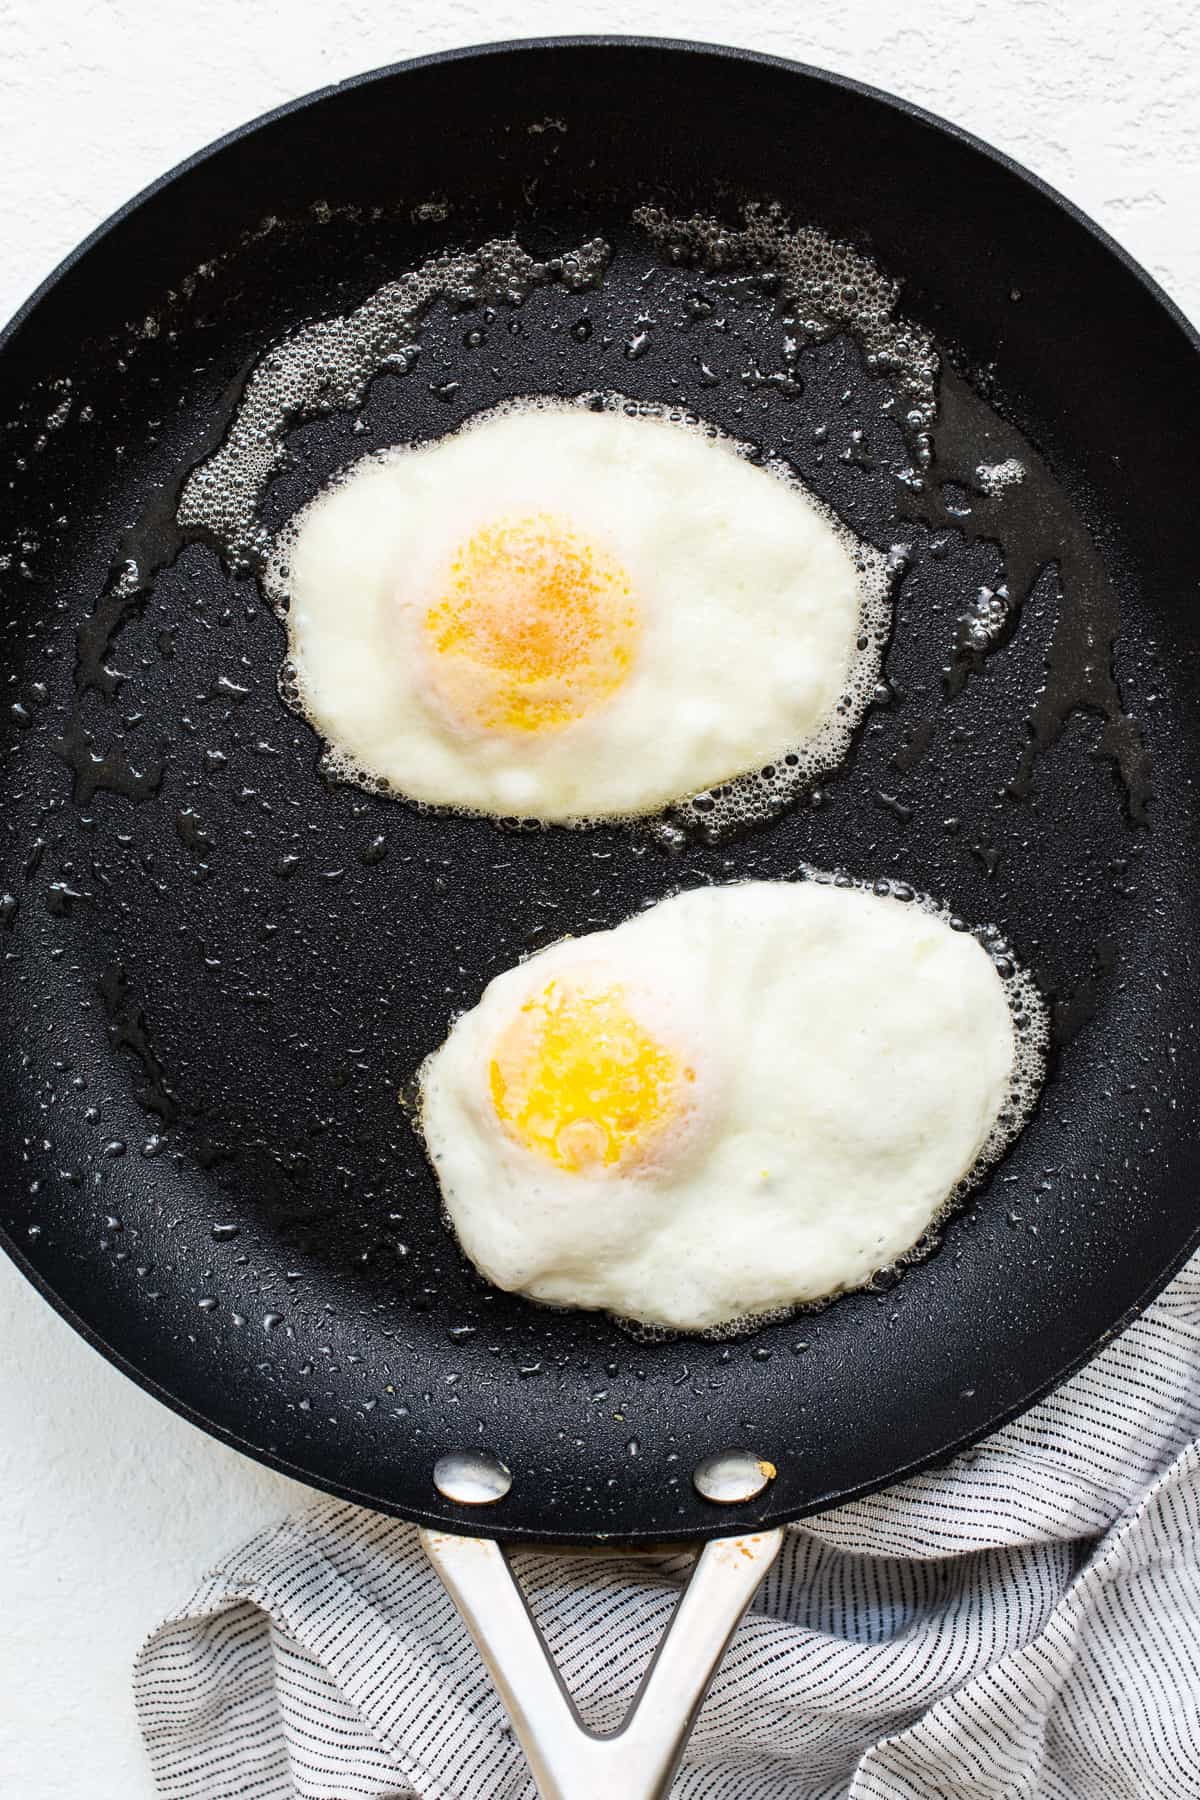 روی تخم مرغ سفت در ماهیتابه با کره پخته می شود.